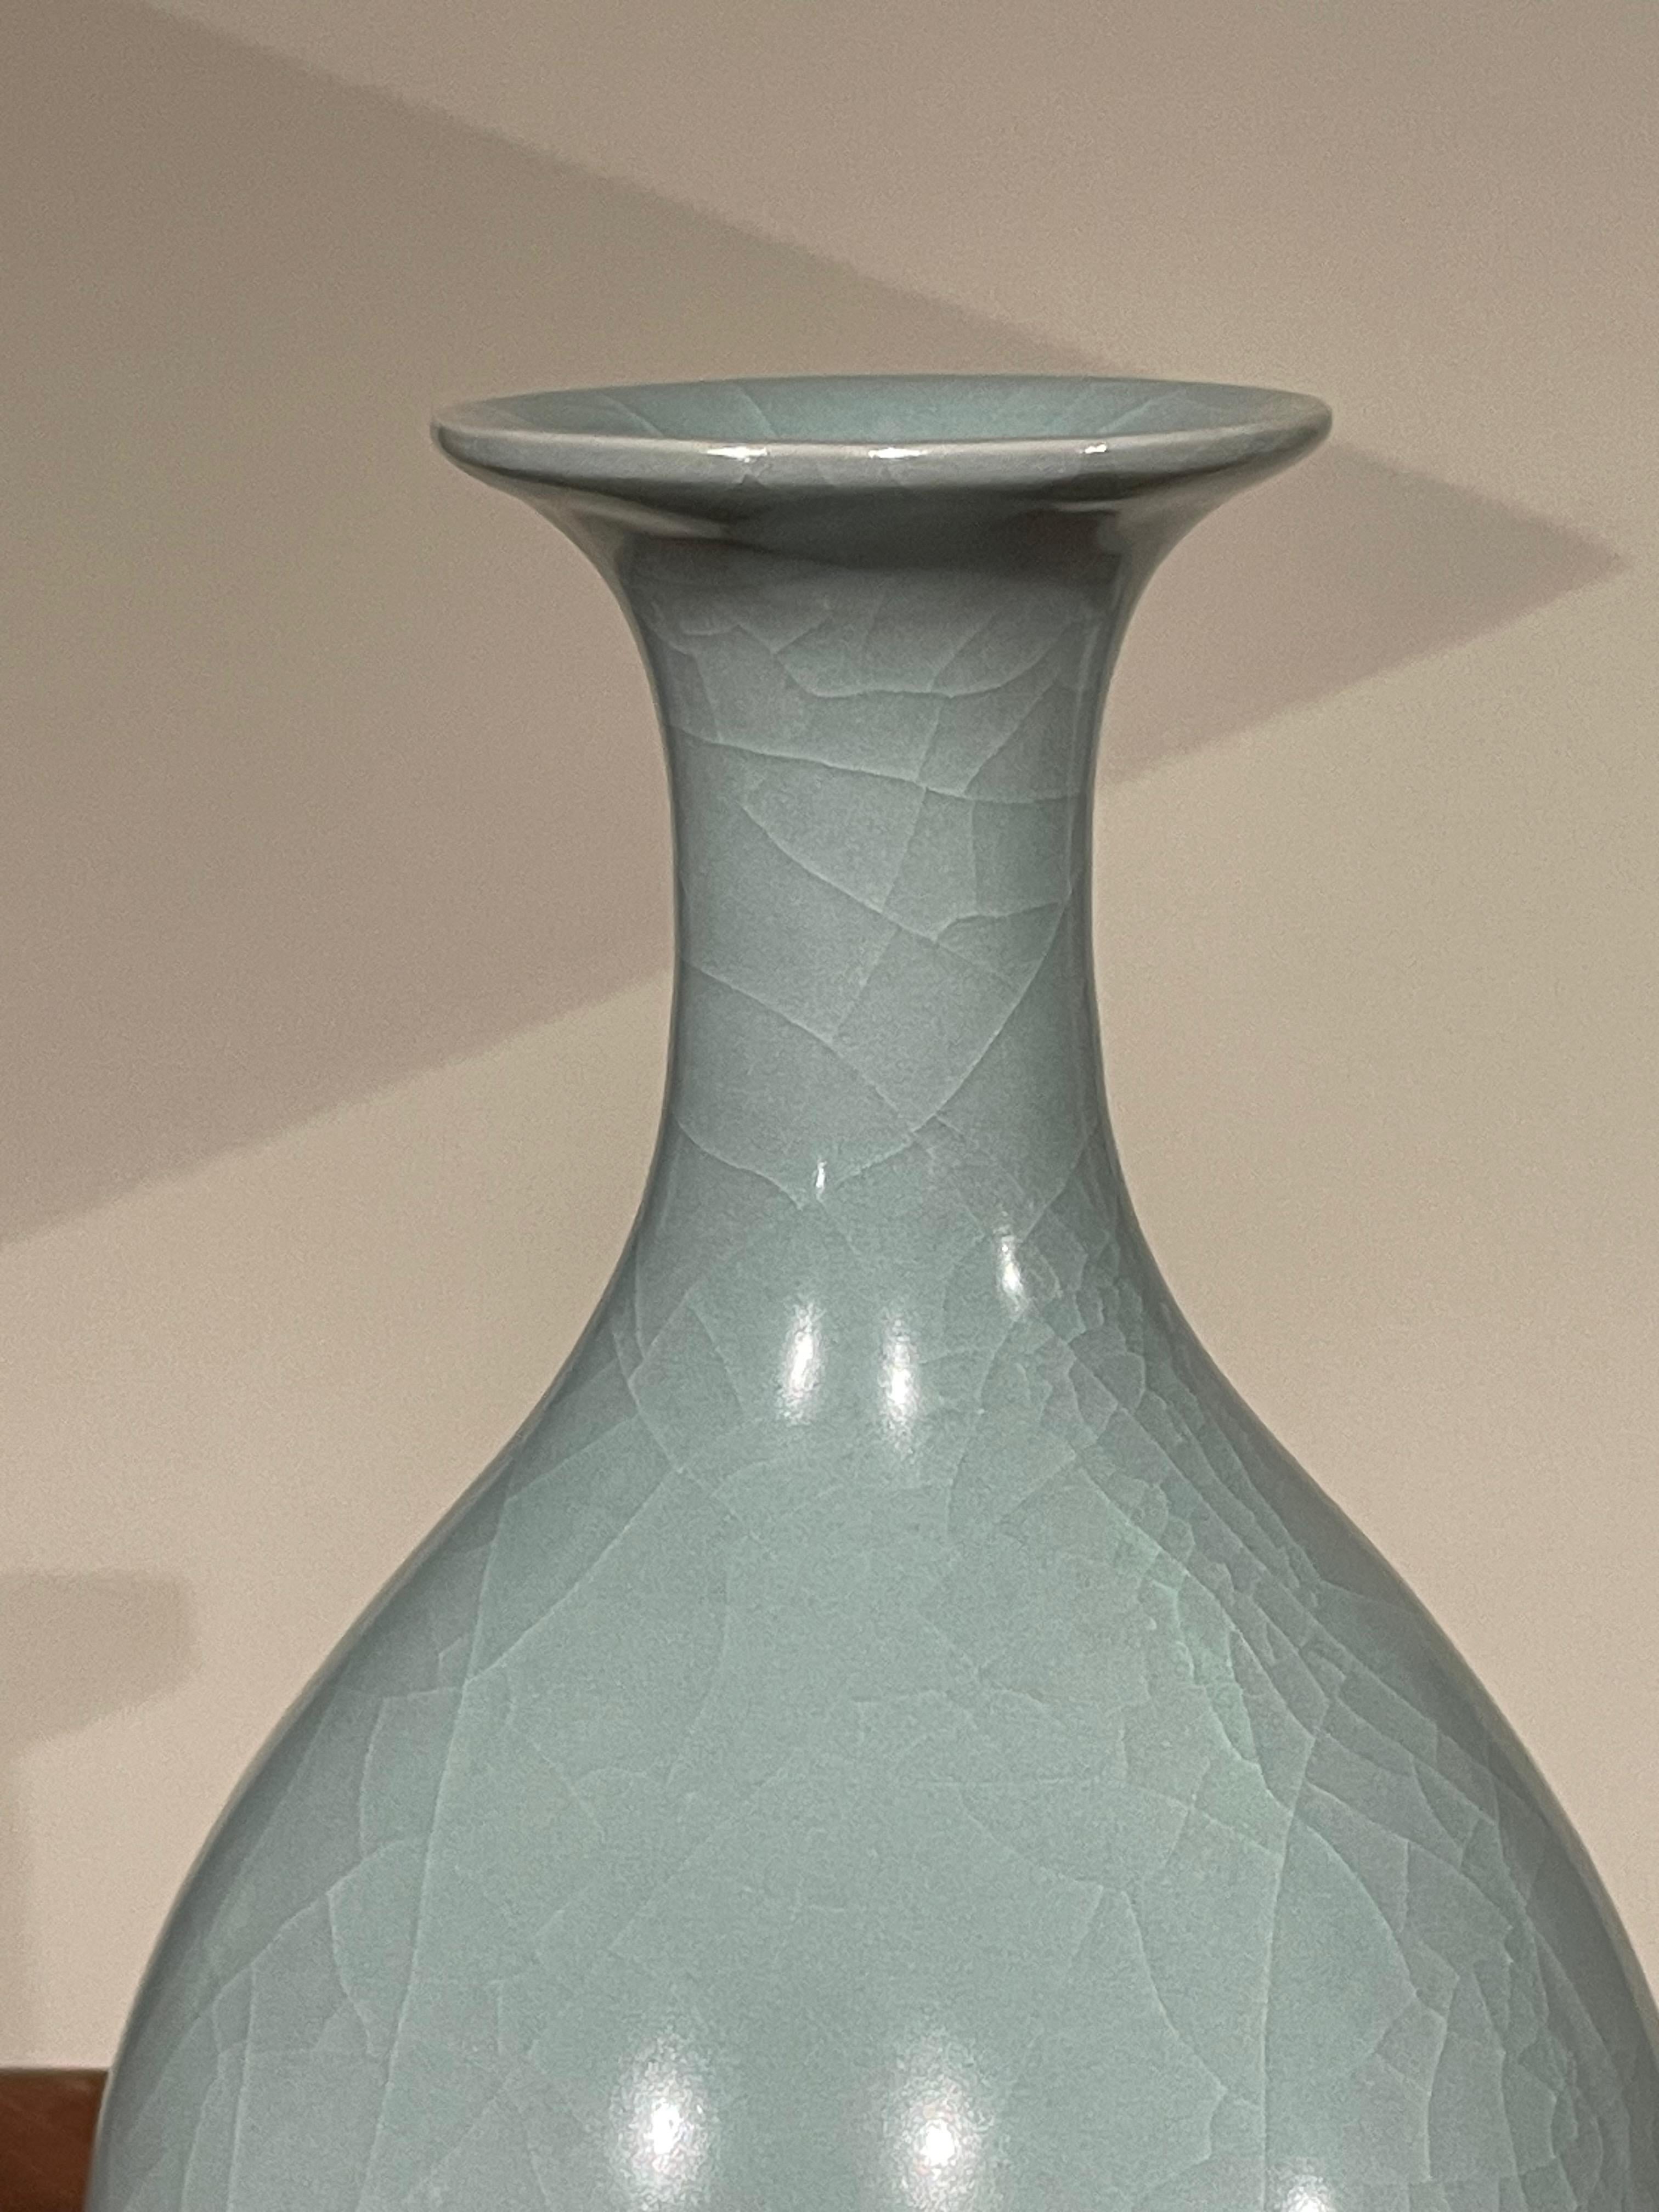 Vase contemporain chinois de couleur turquoise pâle.
Forme classique avec fond arrondi.
Une large collection est disponible avec des tailles et des formes variées.
Vendu à l'unité.
ARRIVÉE AVRIL